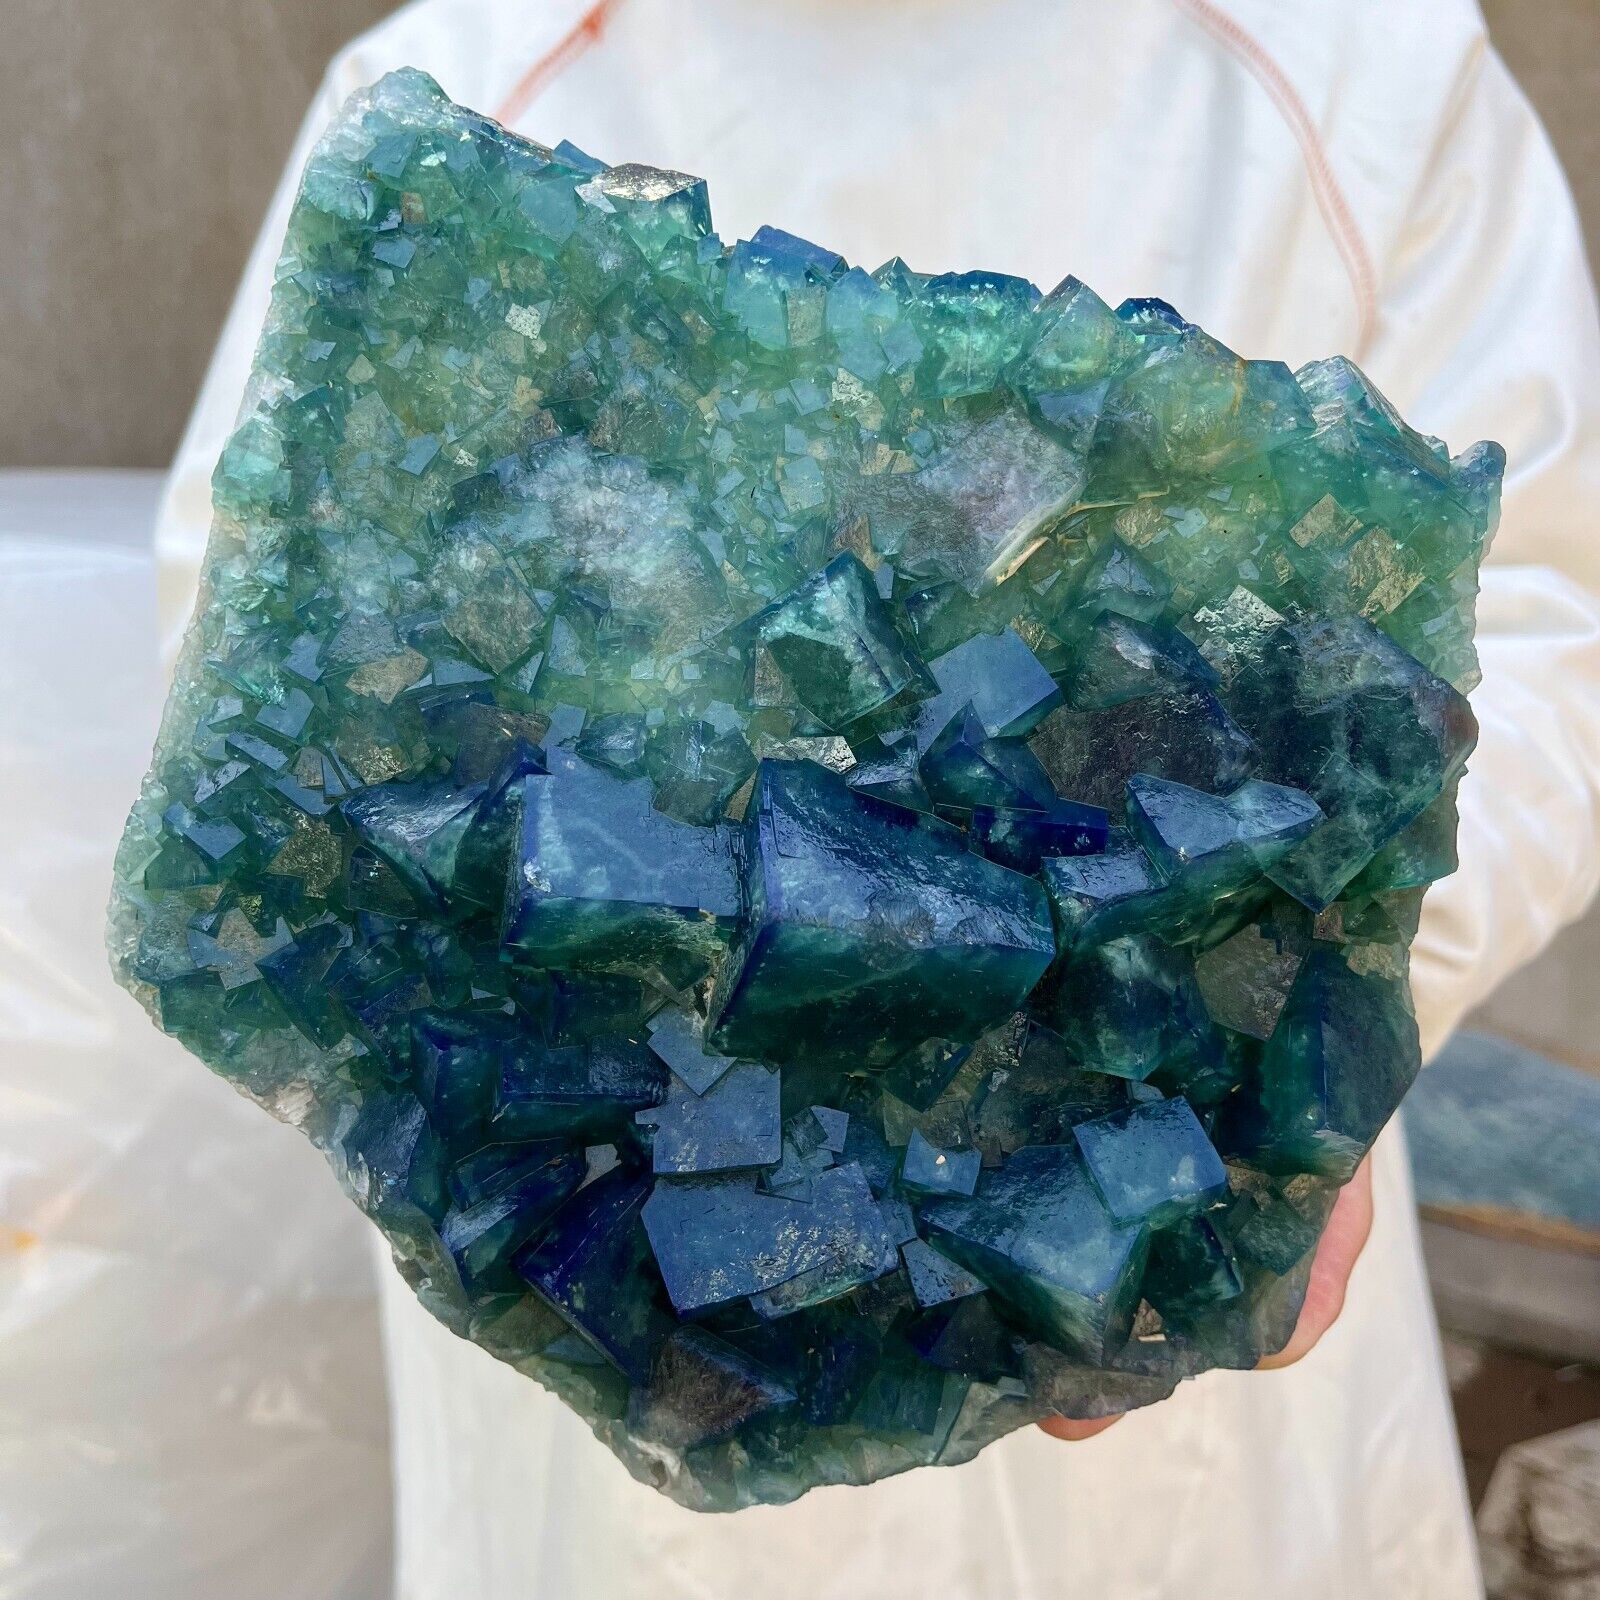 14.4lb Large NATURAL Green Cube FLUORITE Quartz Crystal Cluster Mineral Specimen